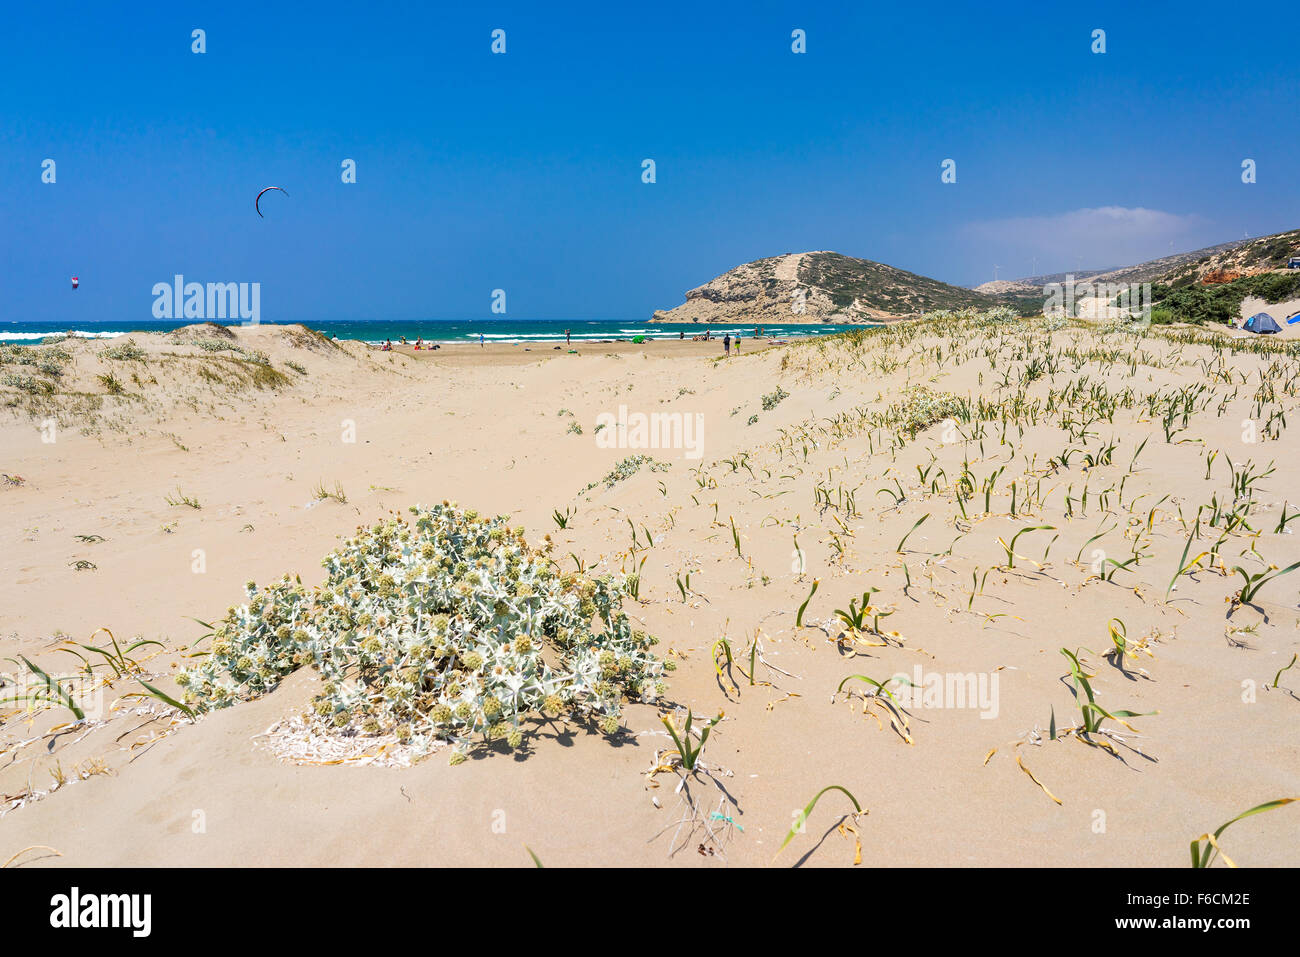 La spiaggia di sabbia dorata a Prasonisi sull' isola di Rodi DODECANNESO Grecia Europa Foto Stock